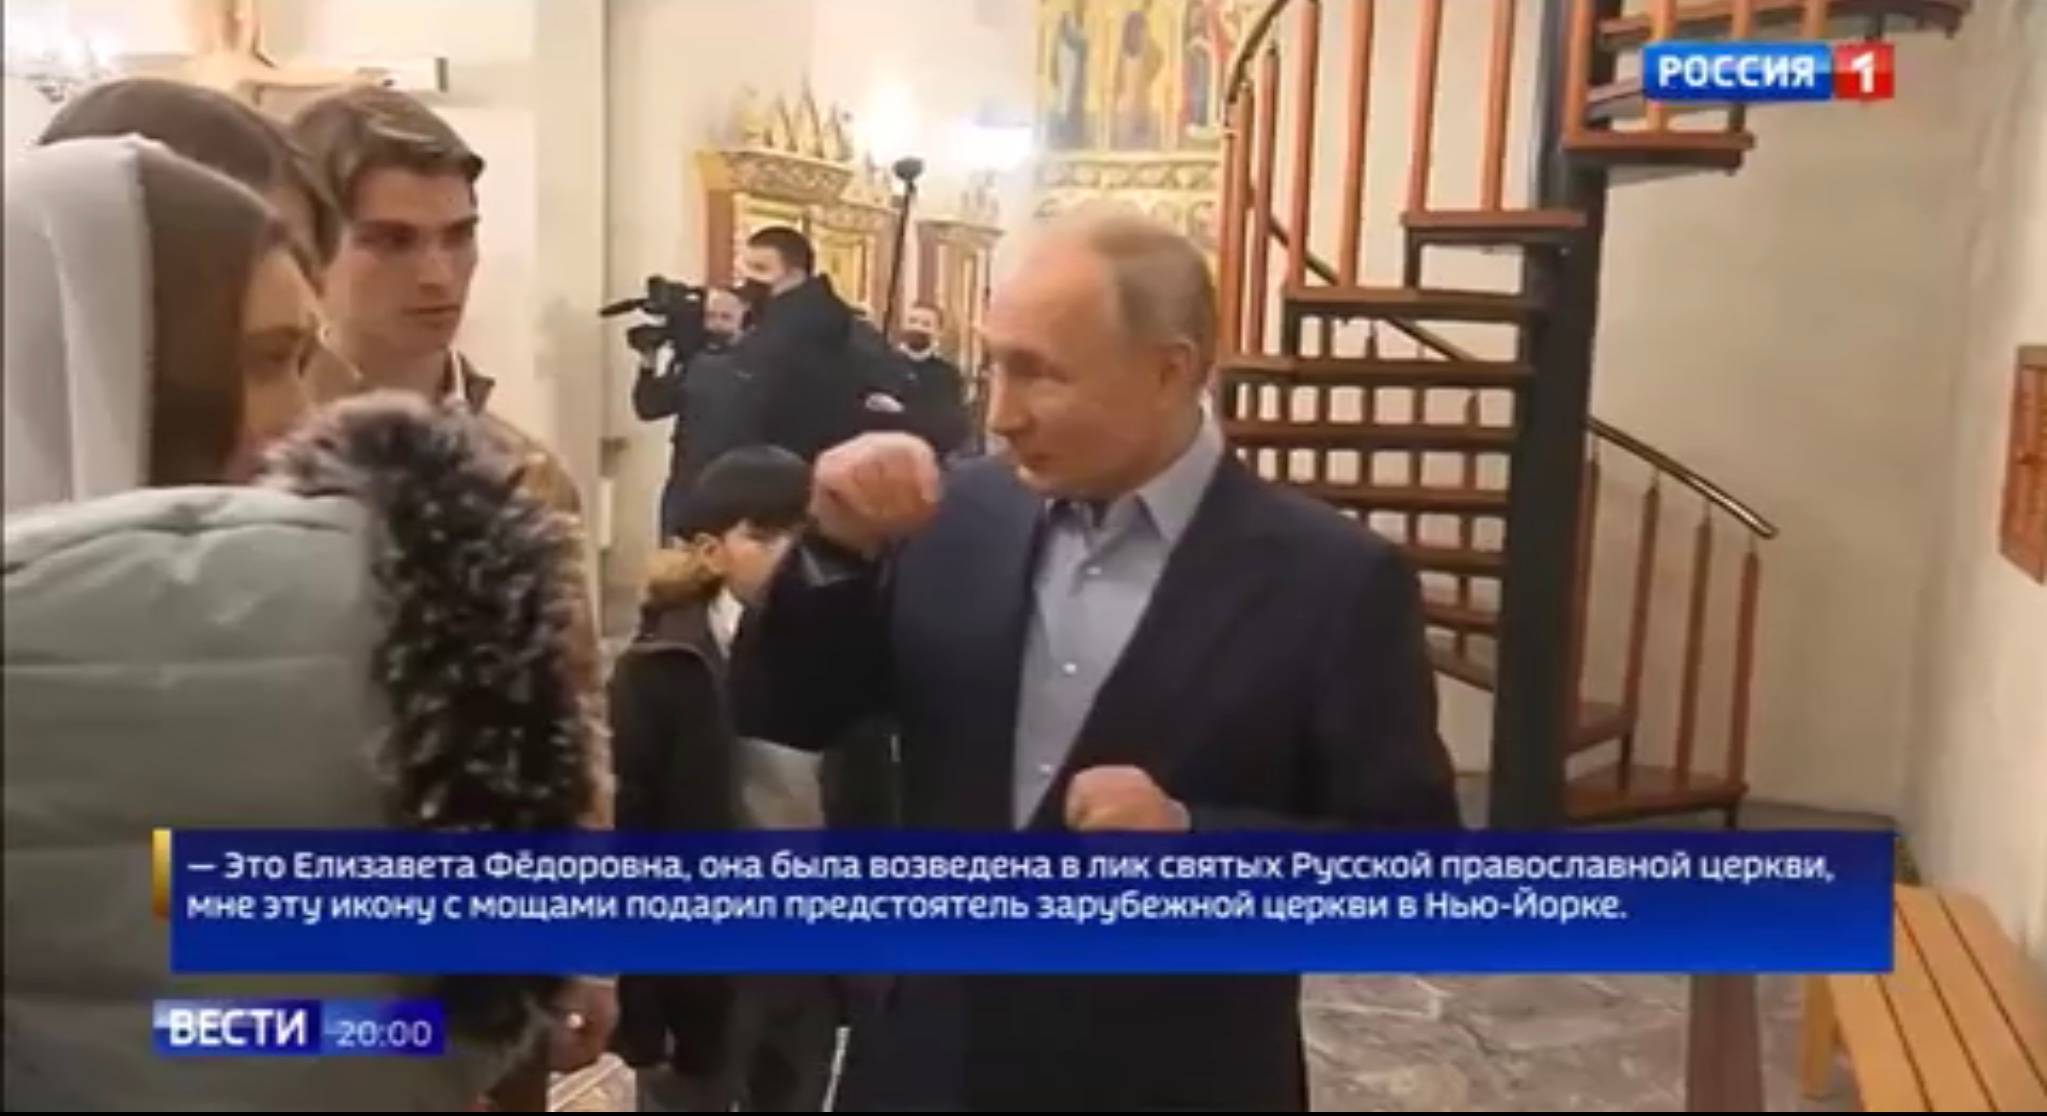 Putin w cerkwi gestykulije do dwóch chłopców. Napis po rosyjsku z tekstem jego wypowiedzi